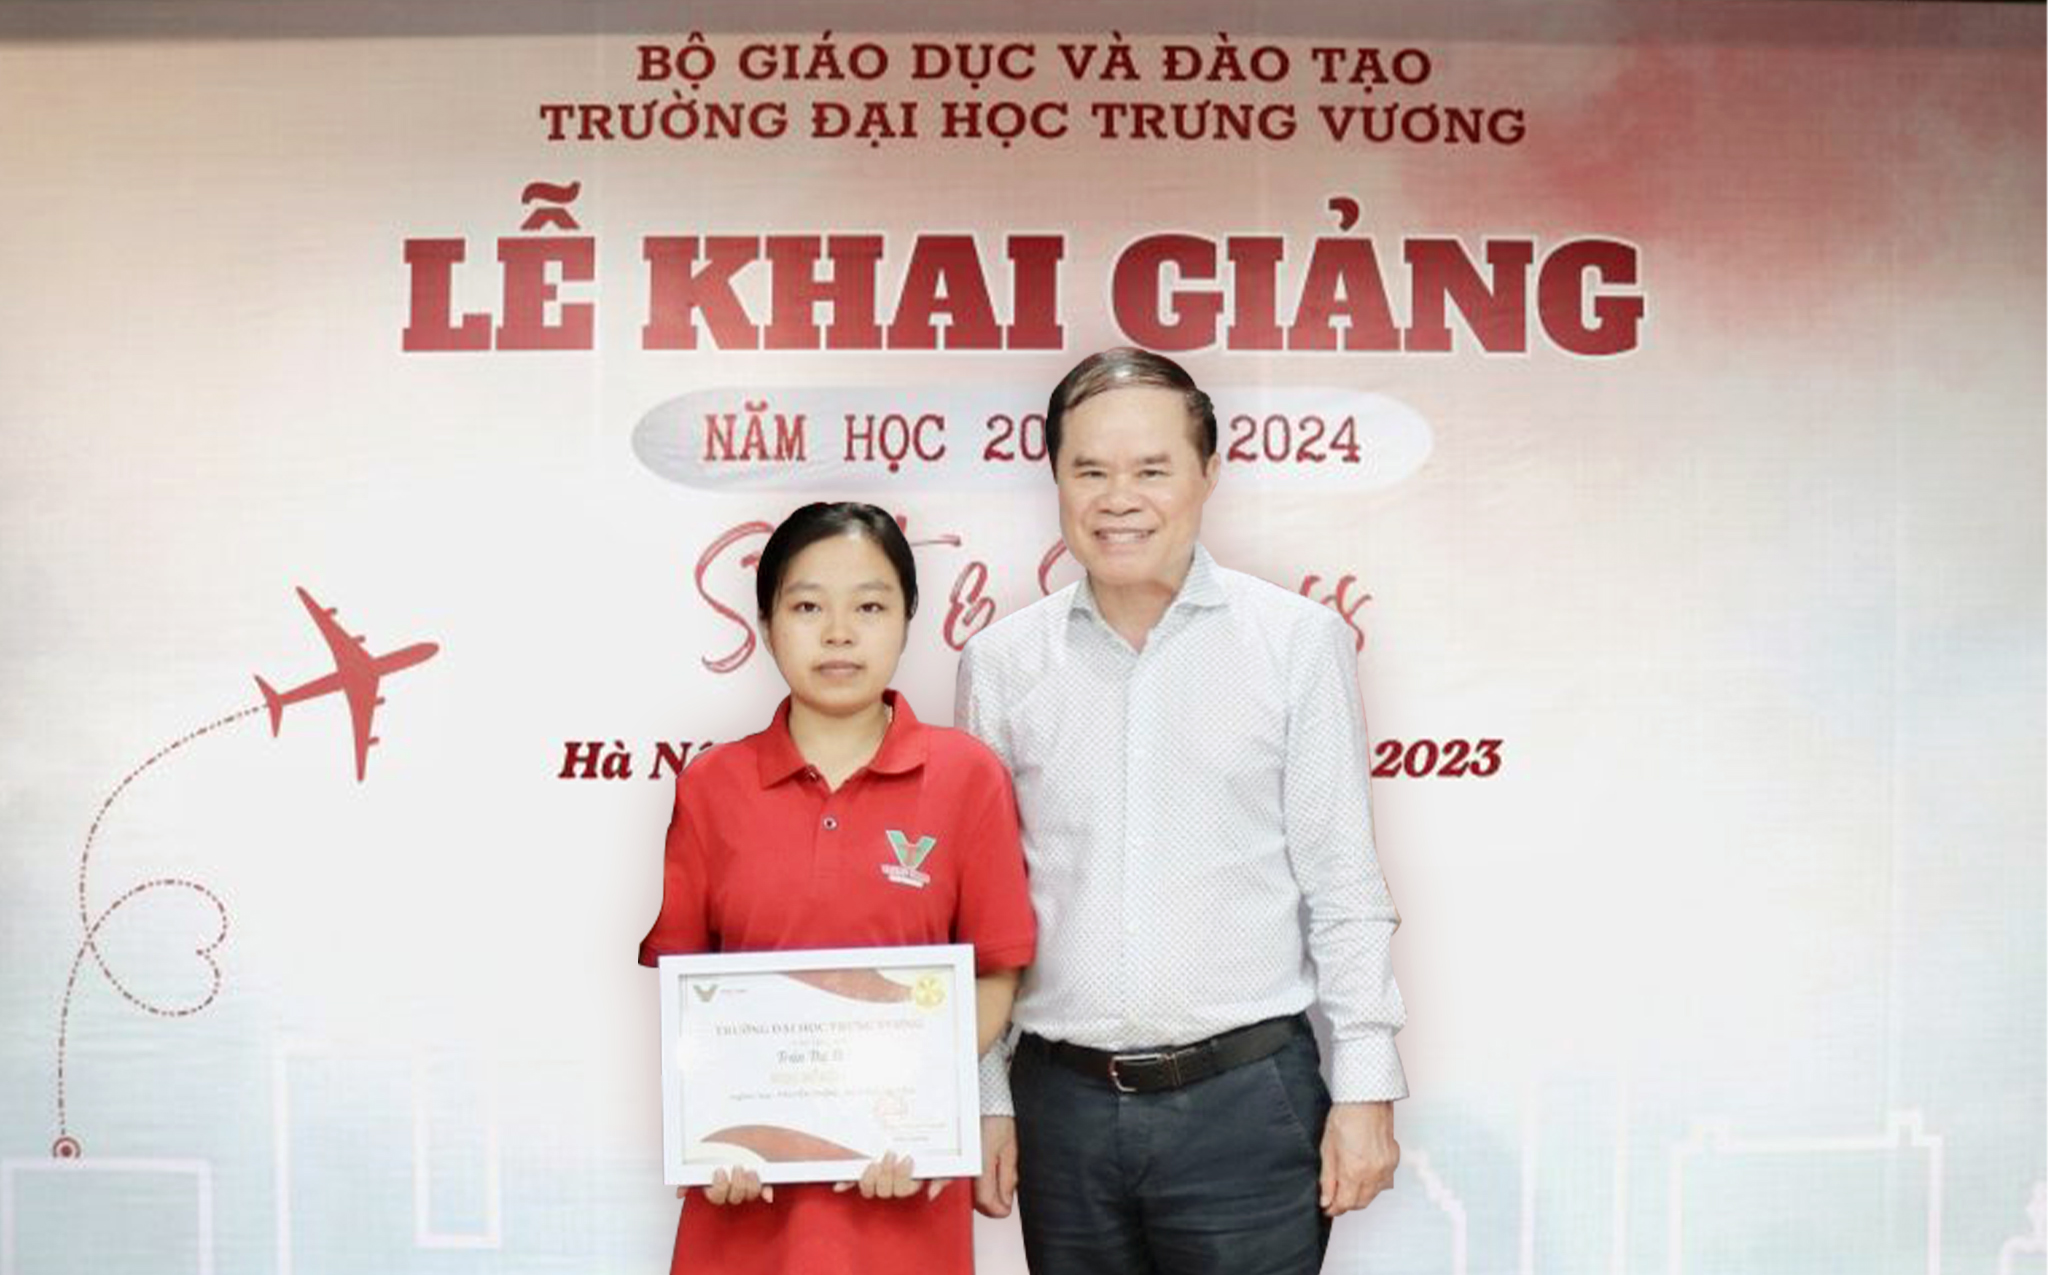 Trần Thị Thắm - Sinh viên nghèo vượt khó, tấm gương sáng cho sinh viên Truyền thông